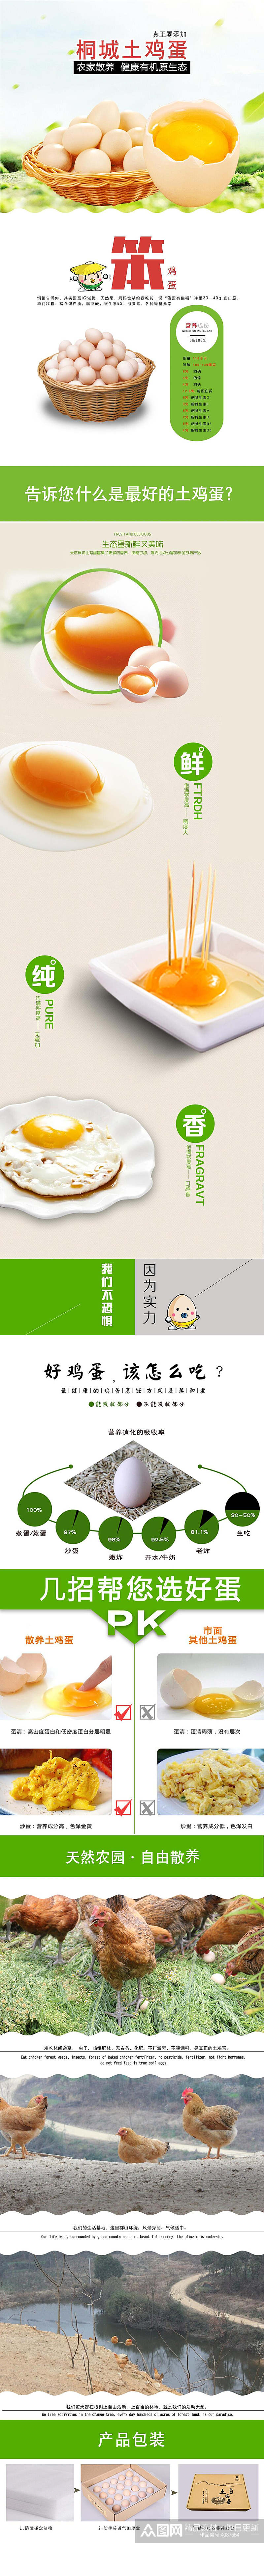 桐城土鸡蛋鸡蛋特产手机版详情页素材